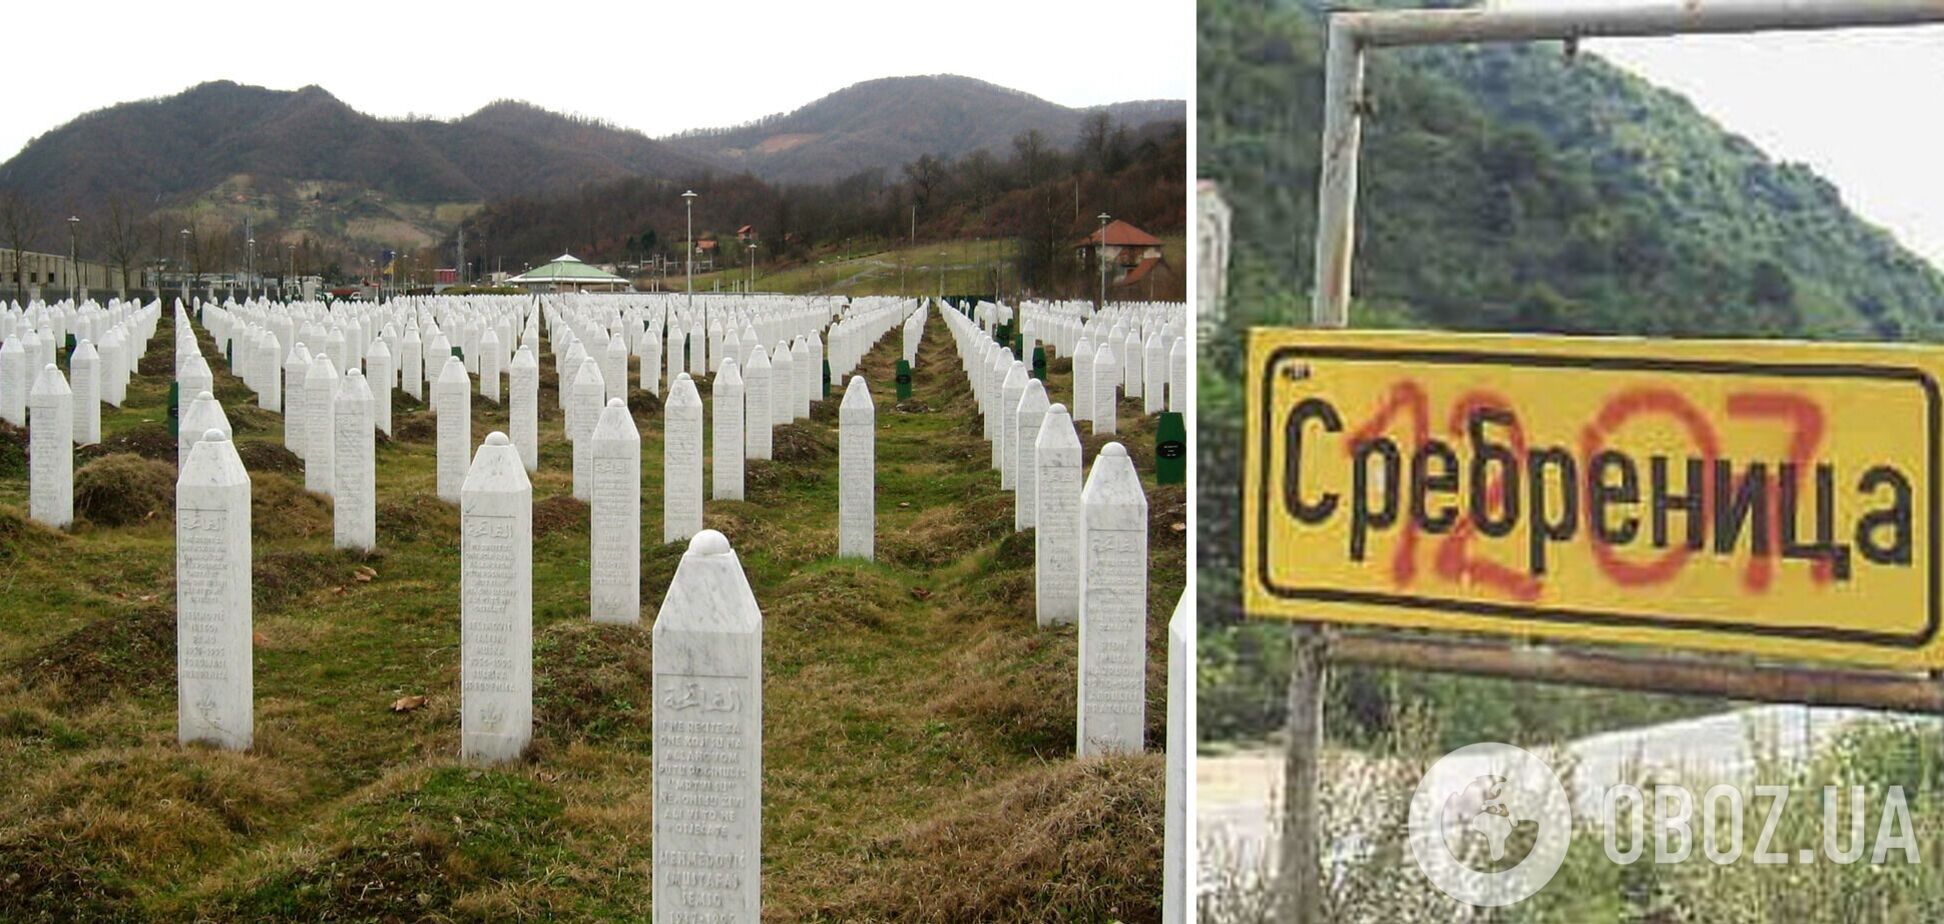 Именно Россия имеет непосредственное отношение к геноциду в Сребренице